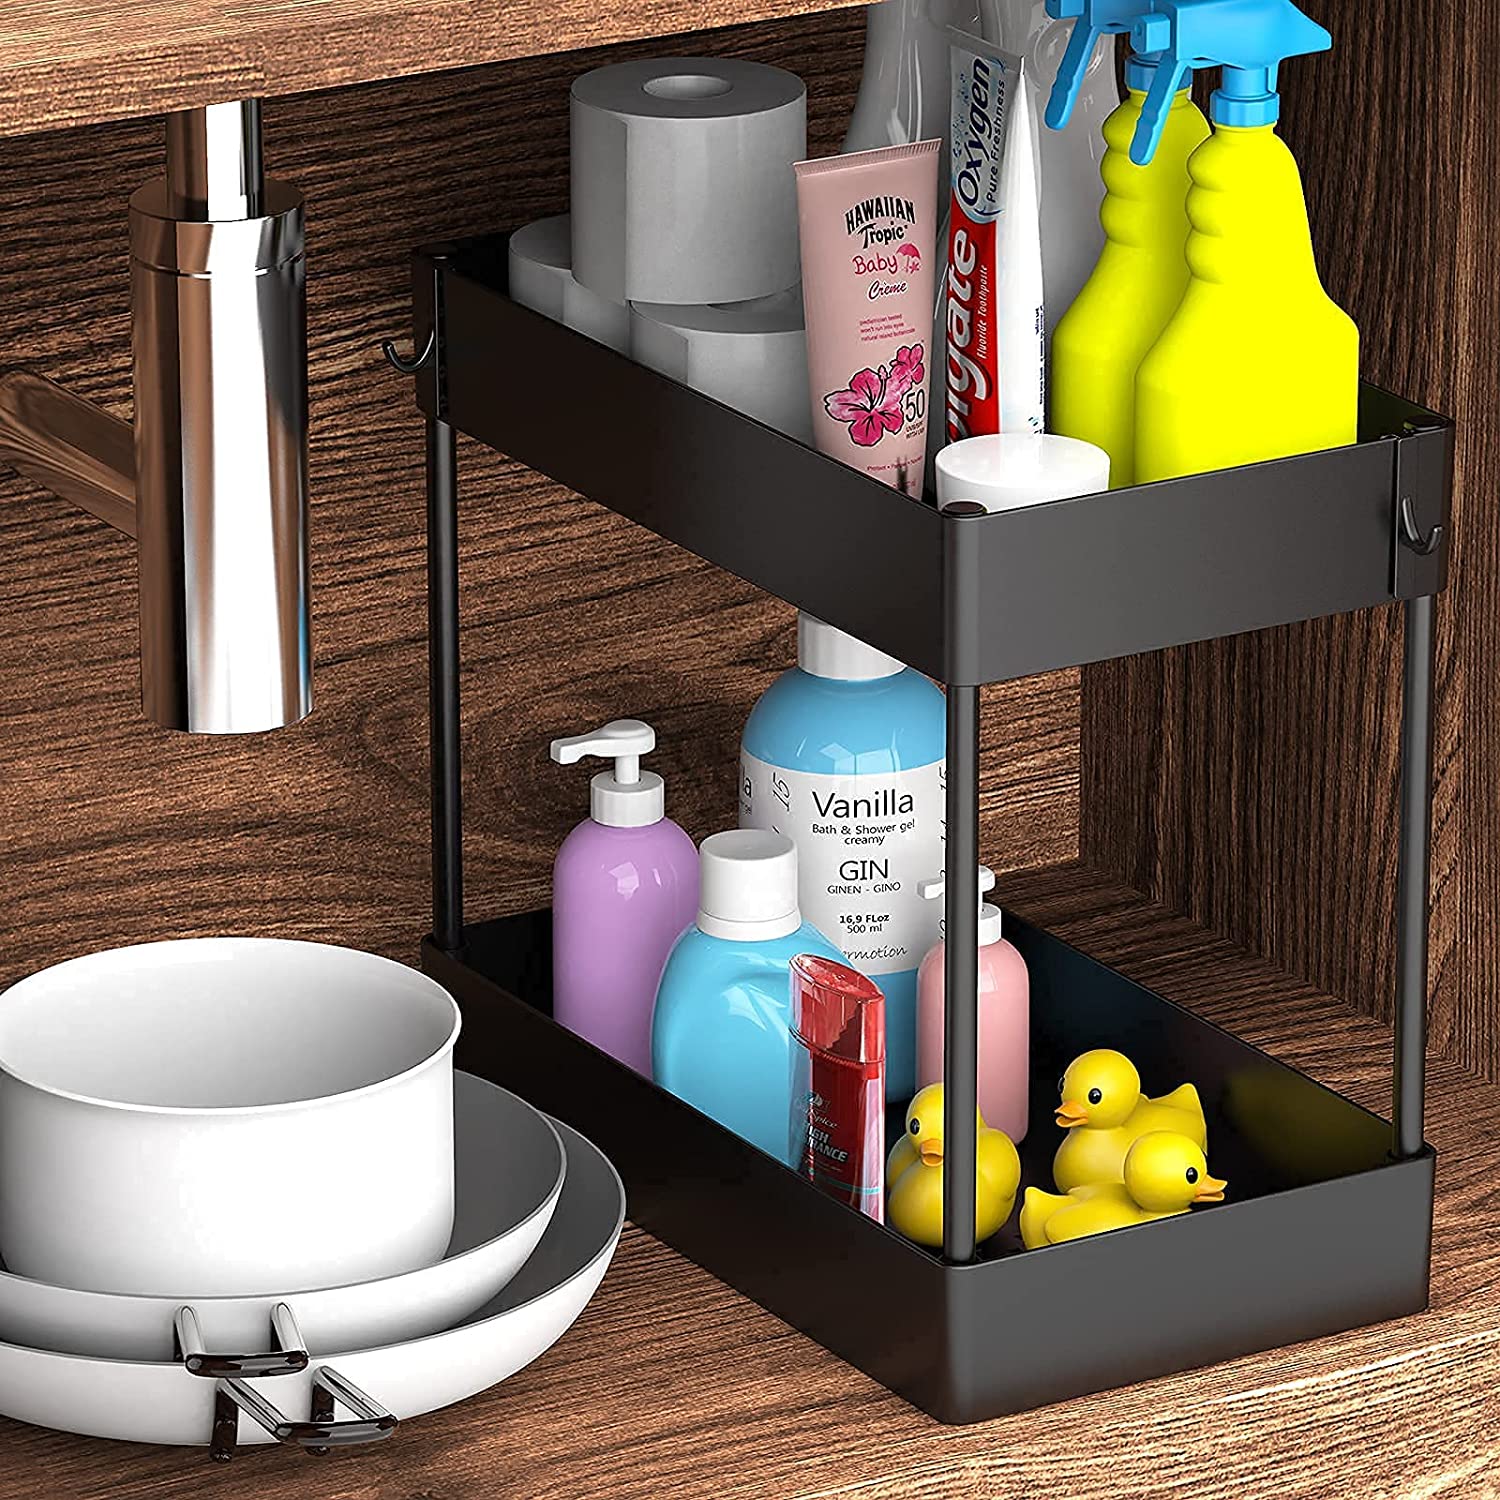 PUILUO Under Sliding Cabinet Basket Organizer, 2 Tier Under Sink Organizers  Black Under Sink Storage for Bathroom Kitchen